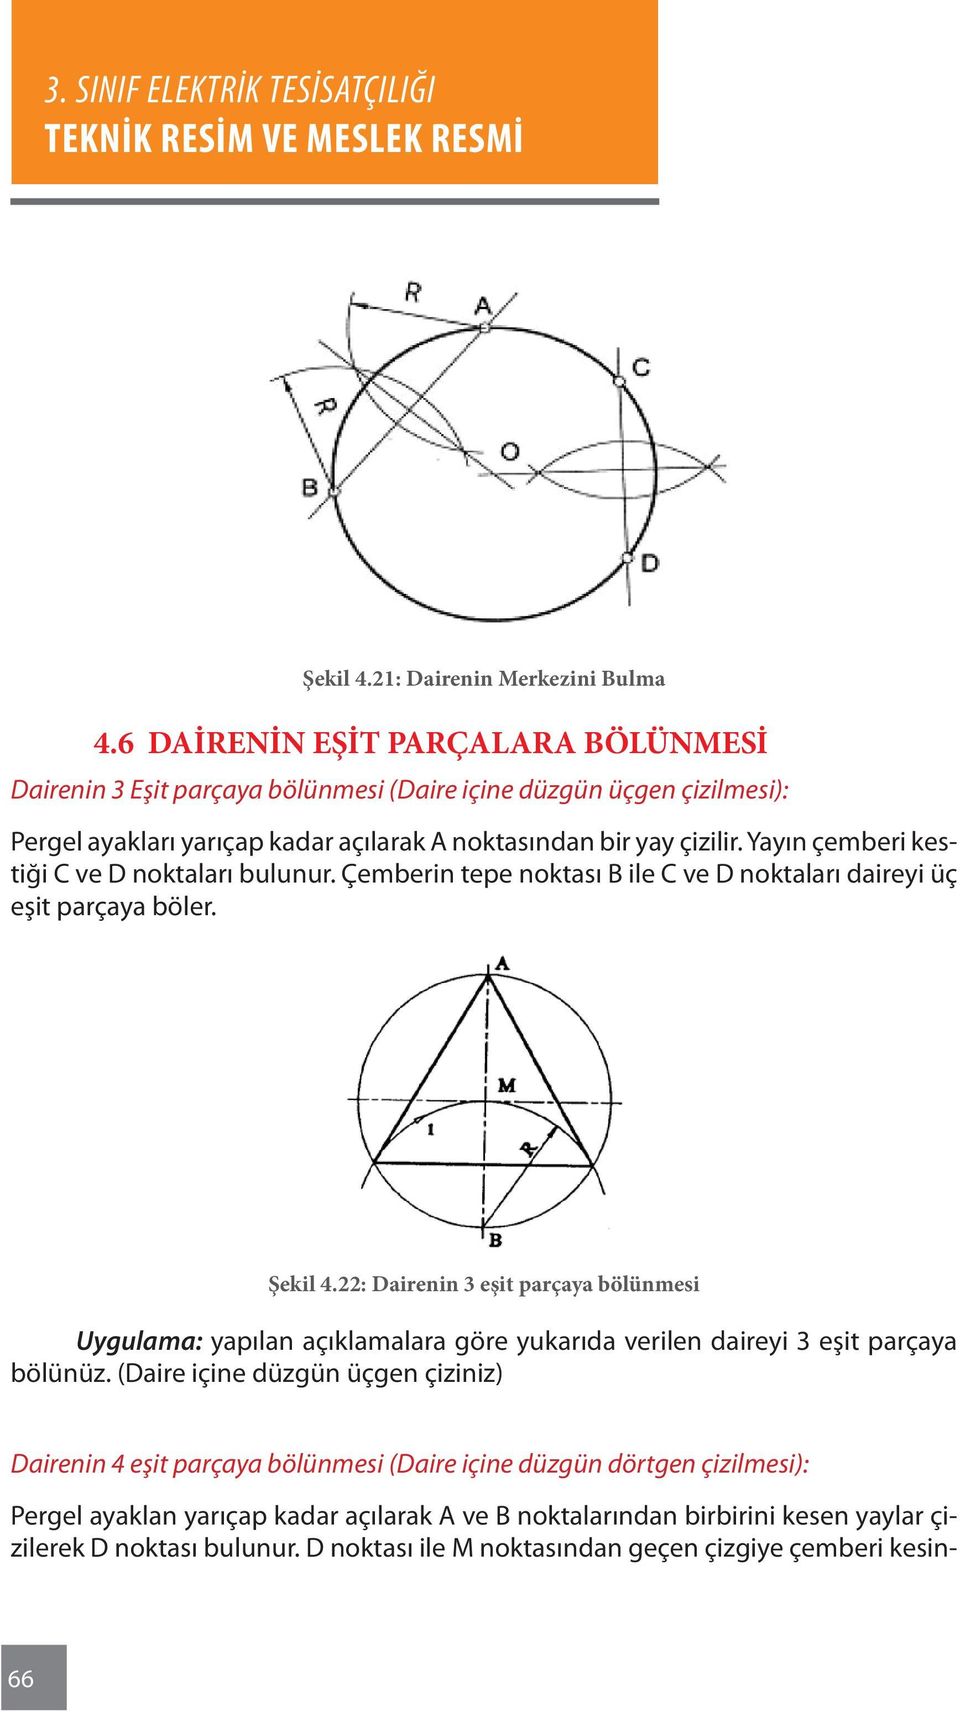 Yayın çemberi kestiği C ve D noktaları bulunur. Çemberin tepe noktası B ile C ve D noktaları daireyi üç eşit parçaya böler. Şekil 4.